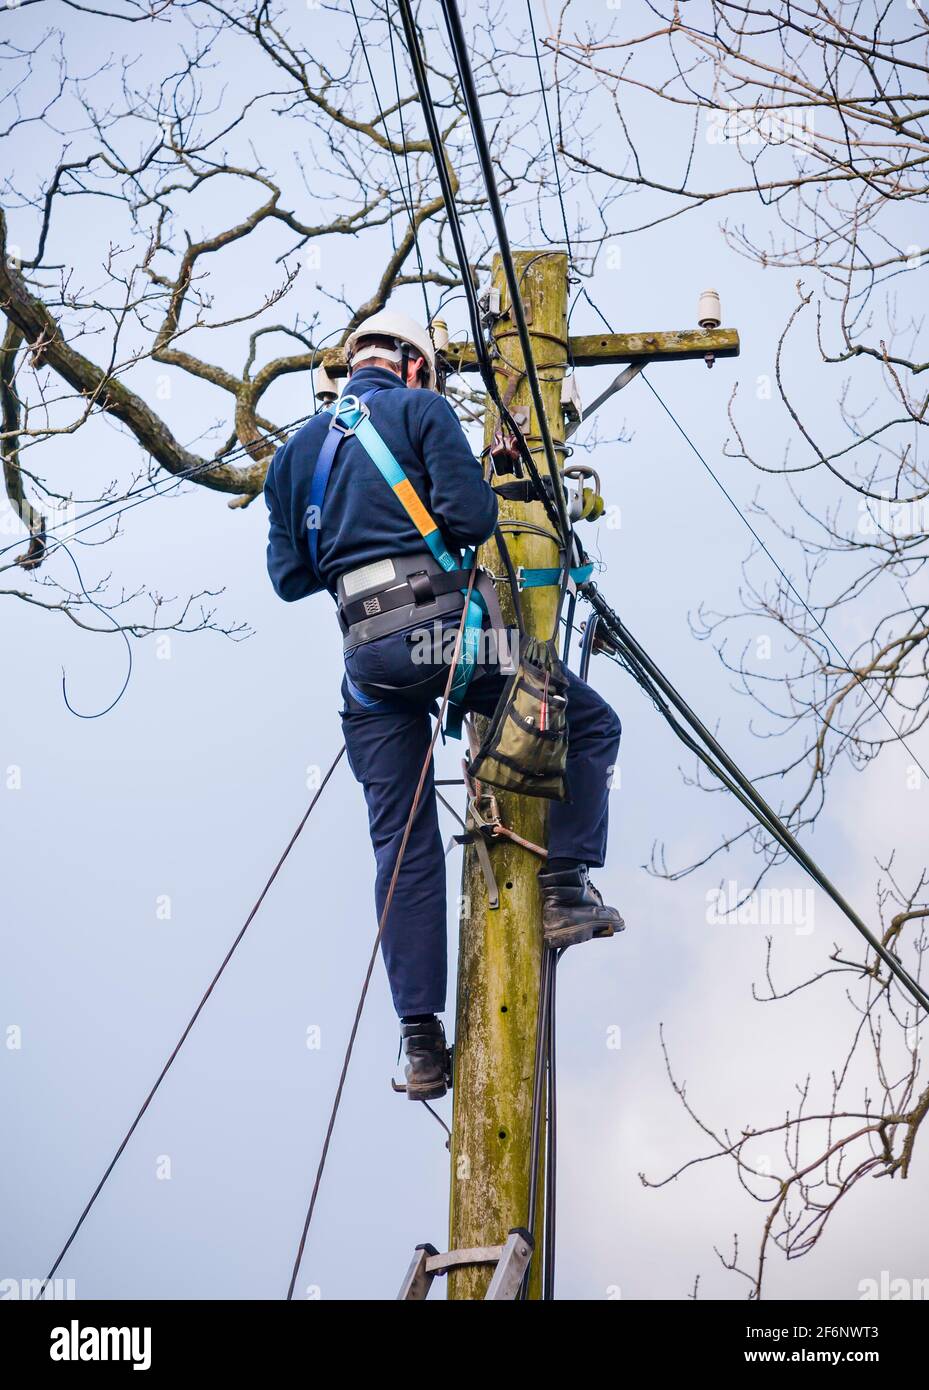 CONWY, Großbritannien - 29. Februar 2012. Telekom-Techniker von BT Openreach repariert eine Telefonleitung. Techniker, der an einem Telegrafenmast in Snowdonia, W, arbeitet Stockfoto